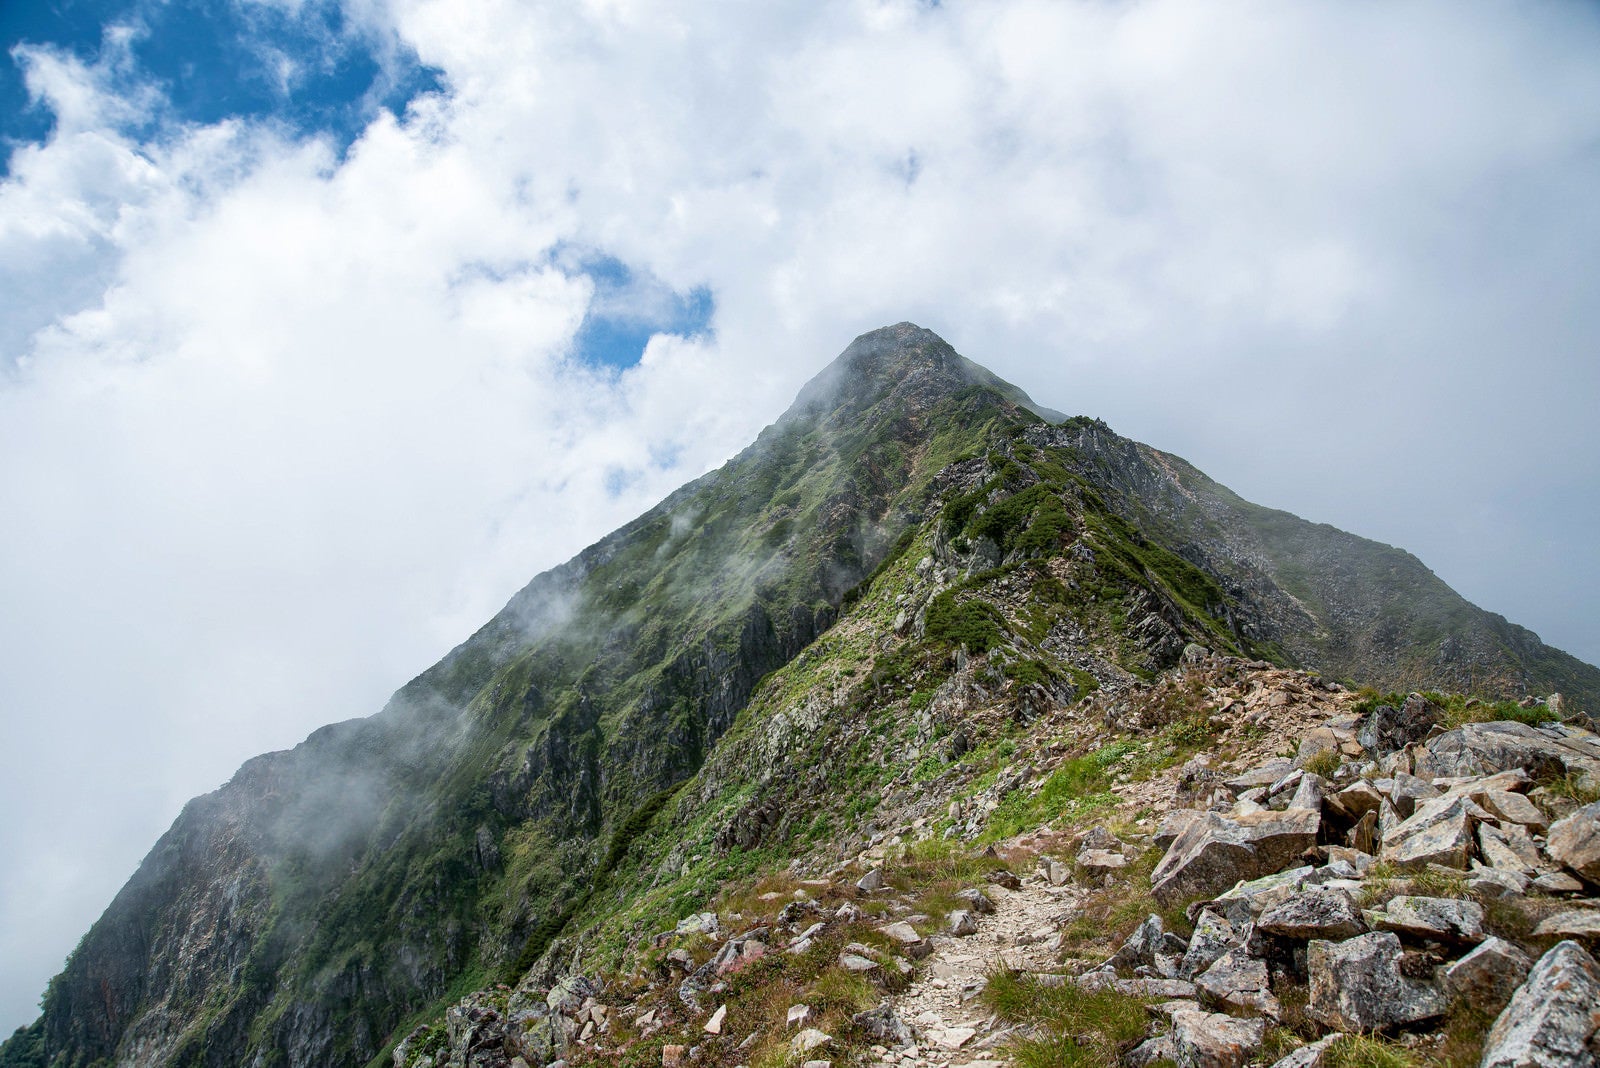 「雲かかる山頂へと続く登山道」の写真